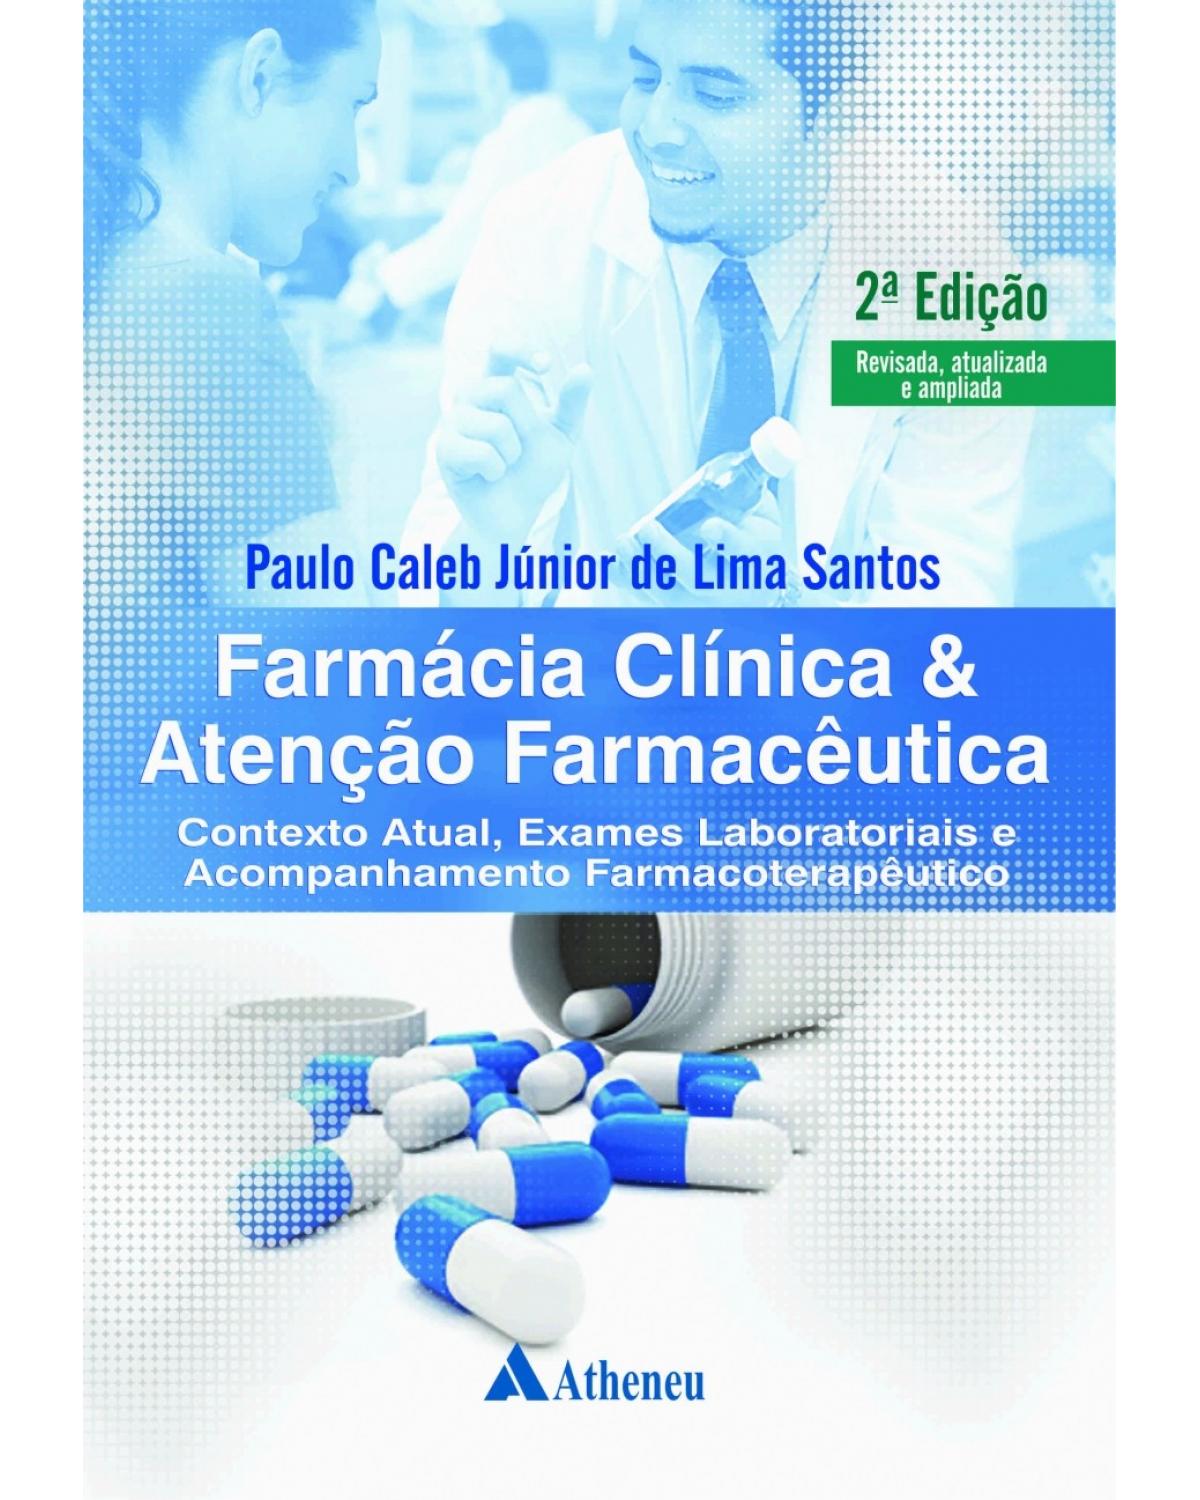 Farmácia clínica e atenção farmacêutica - contexto atual, exames laboratoriais e acompanhamento farmacoterapêutico - 2ª Edição | 2017